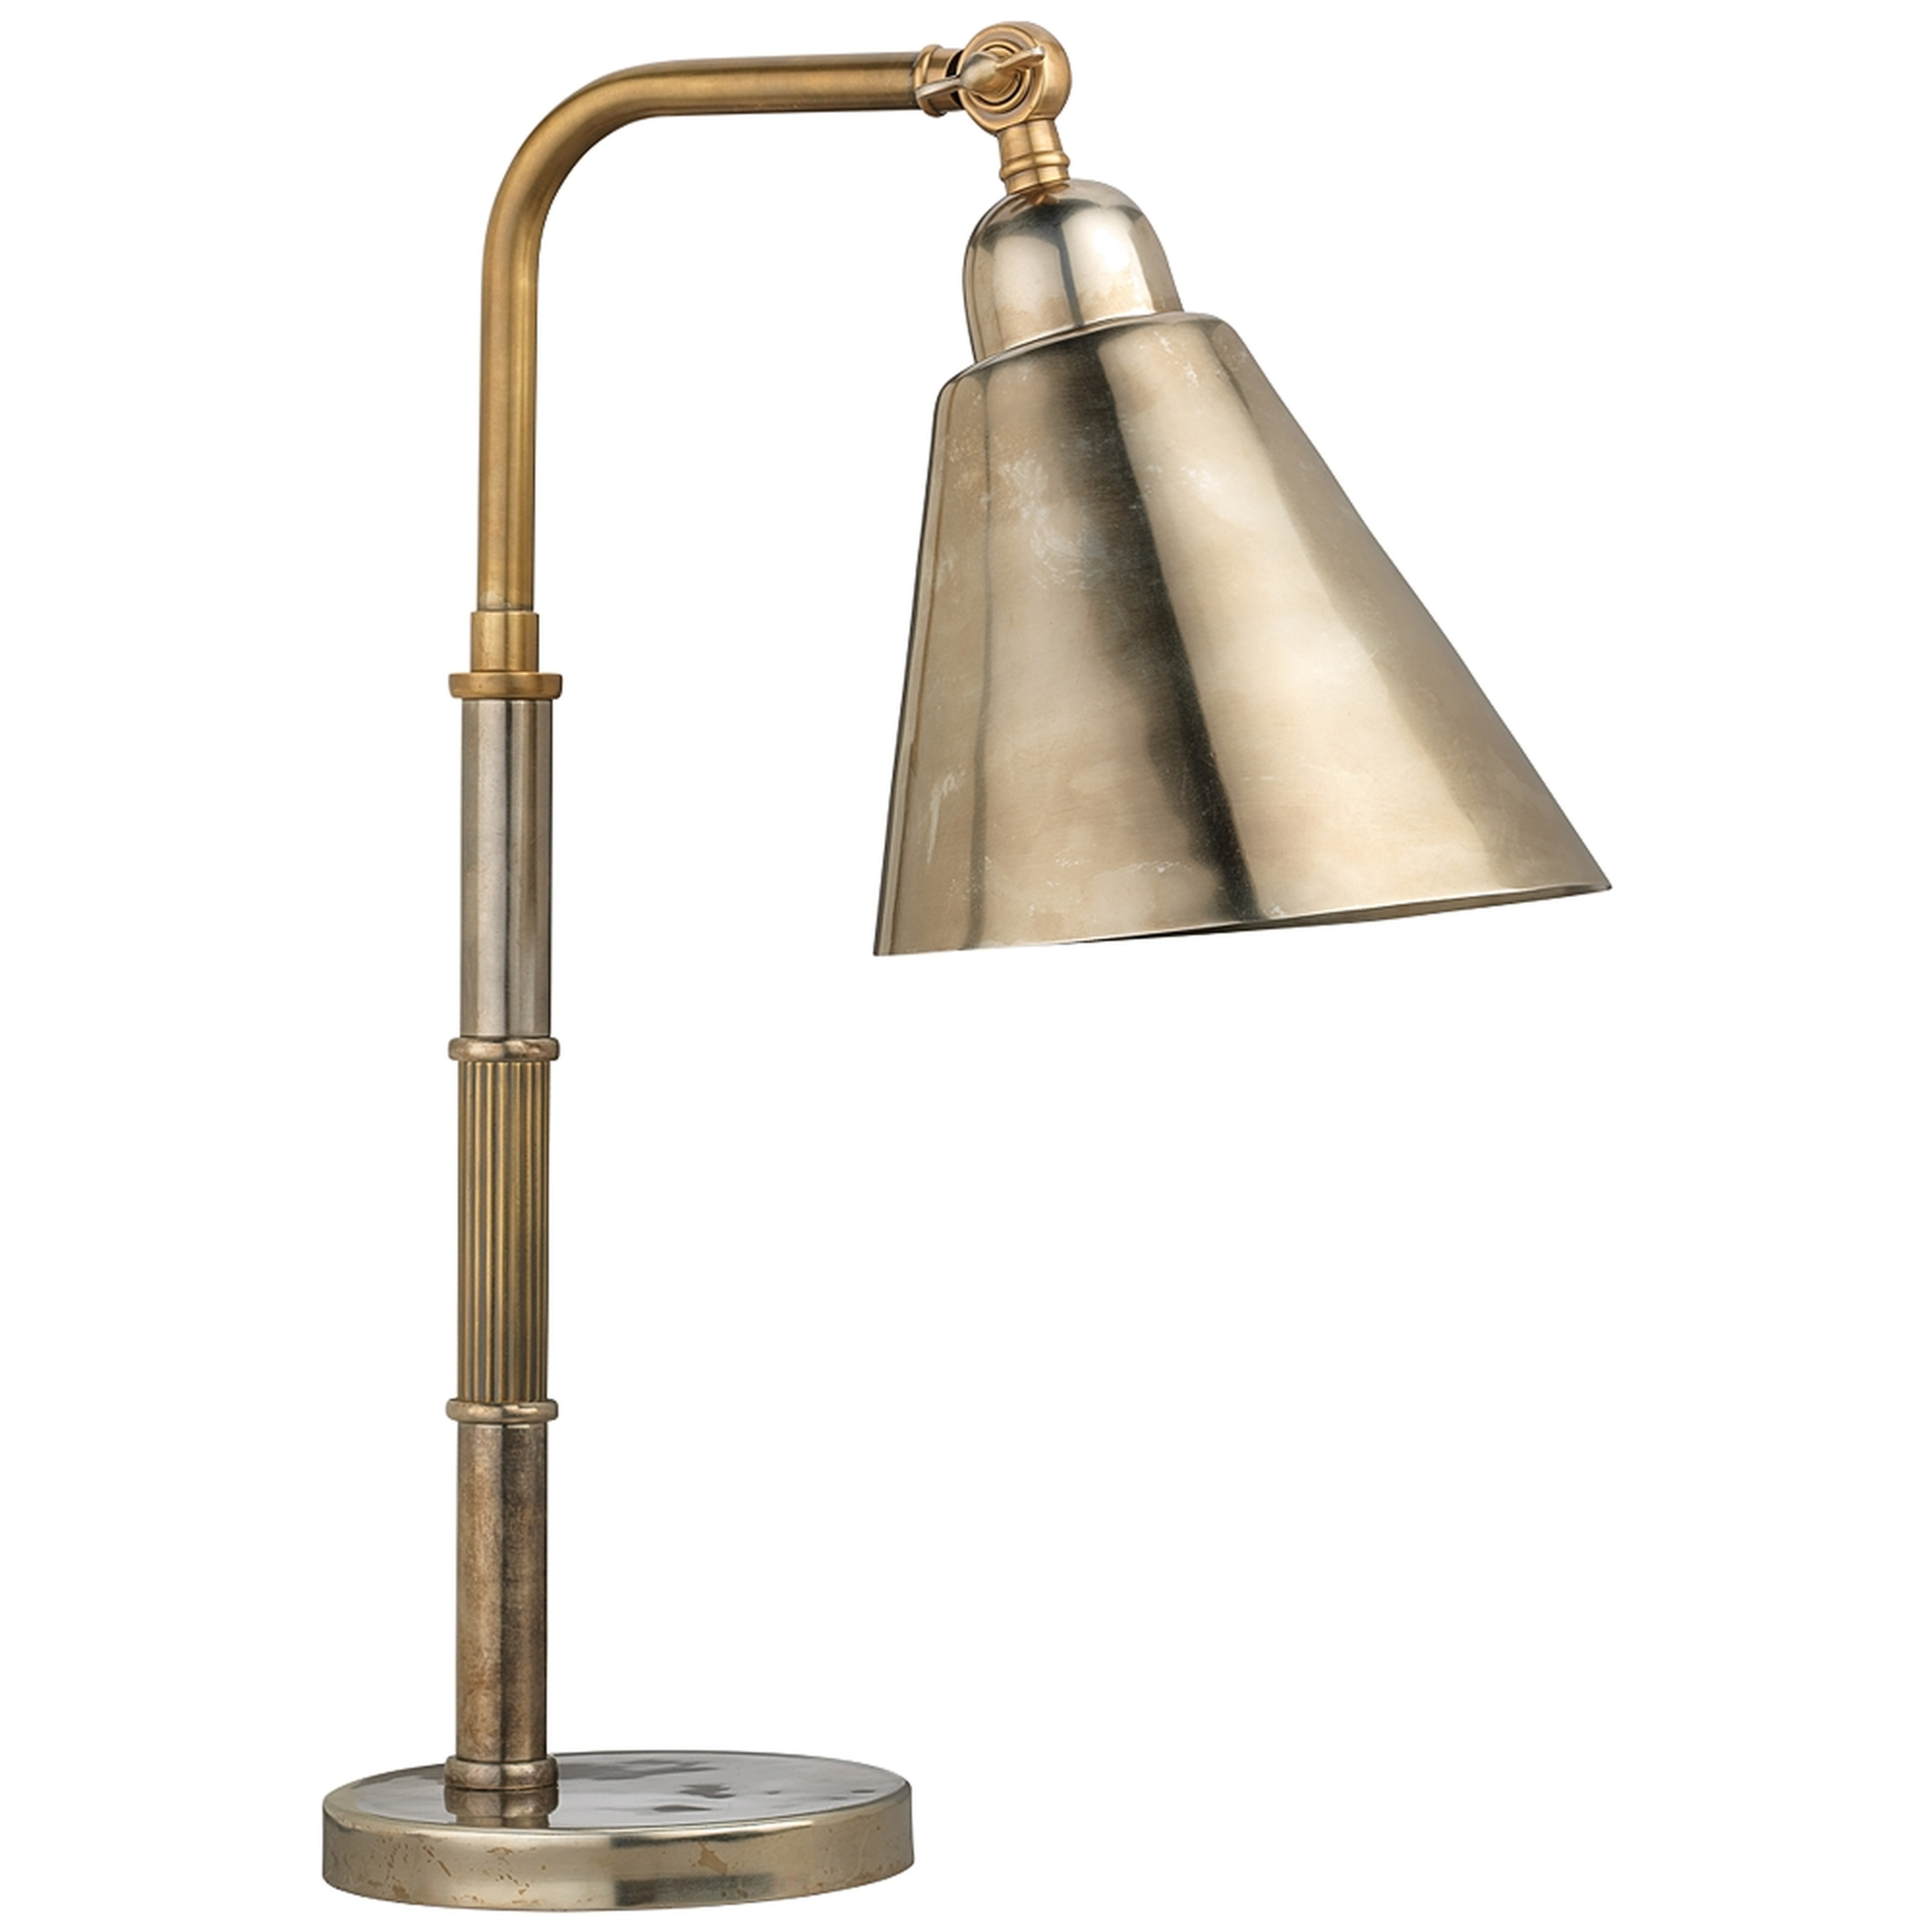 Jamie Young Vilhelm Antique Brass Task Desk Lamp - Style # 96J16 - Lamps Plus